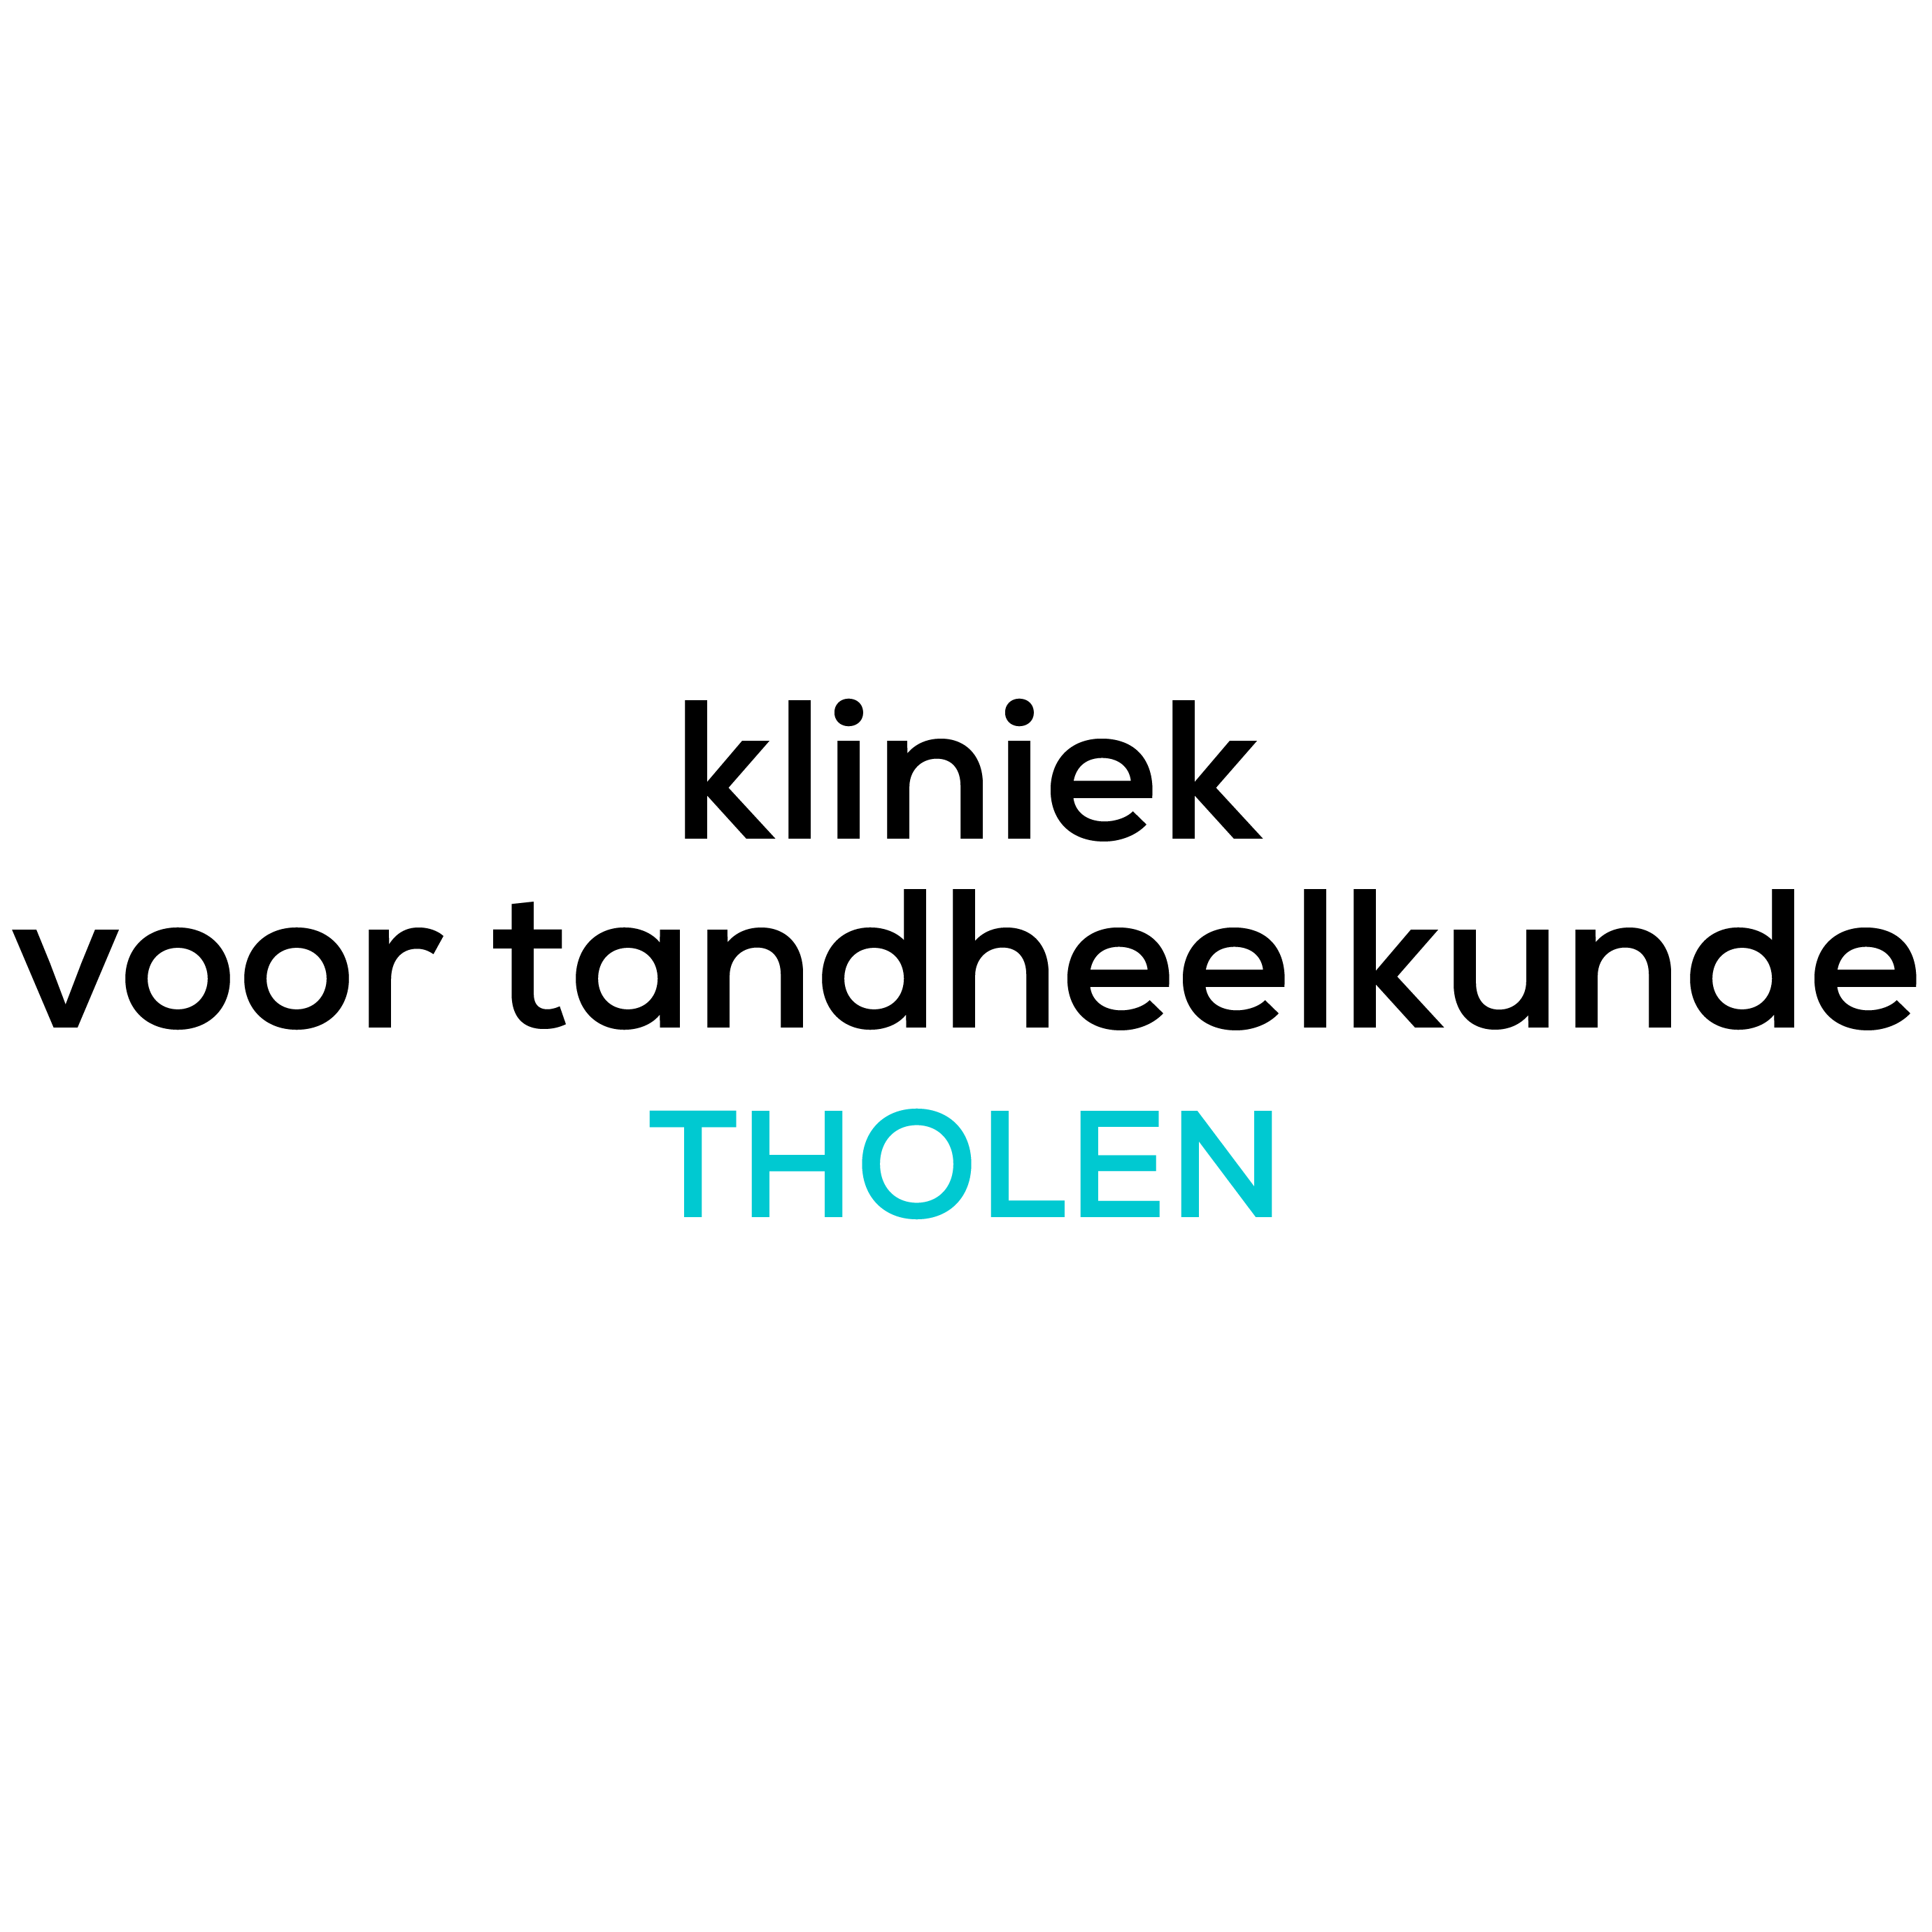 Kliniek voor tandheelkunde Tholen Logo